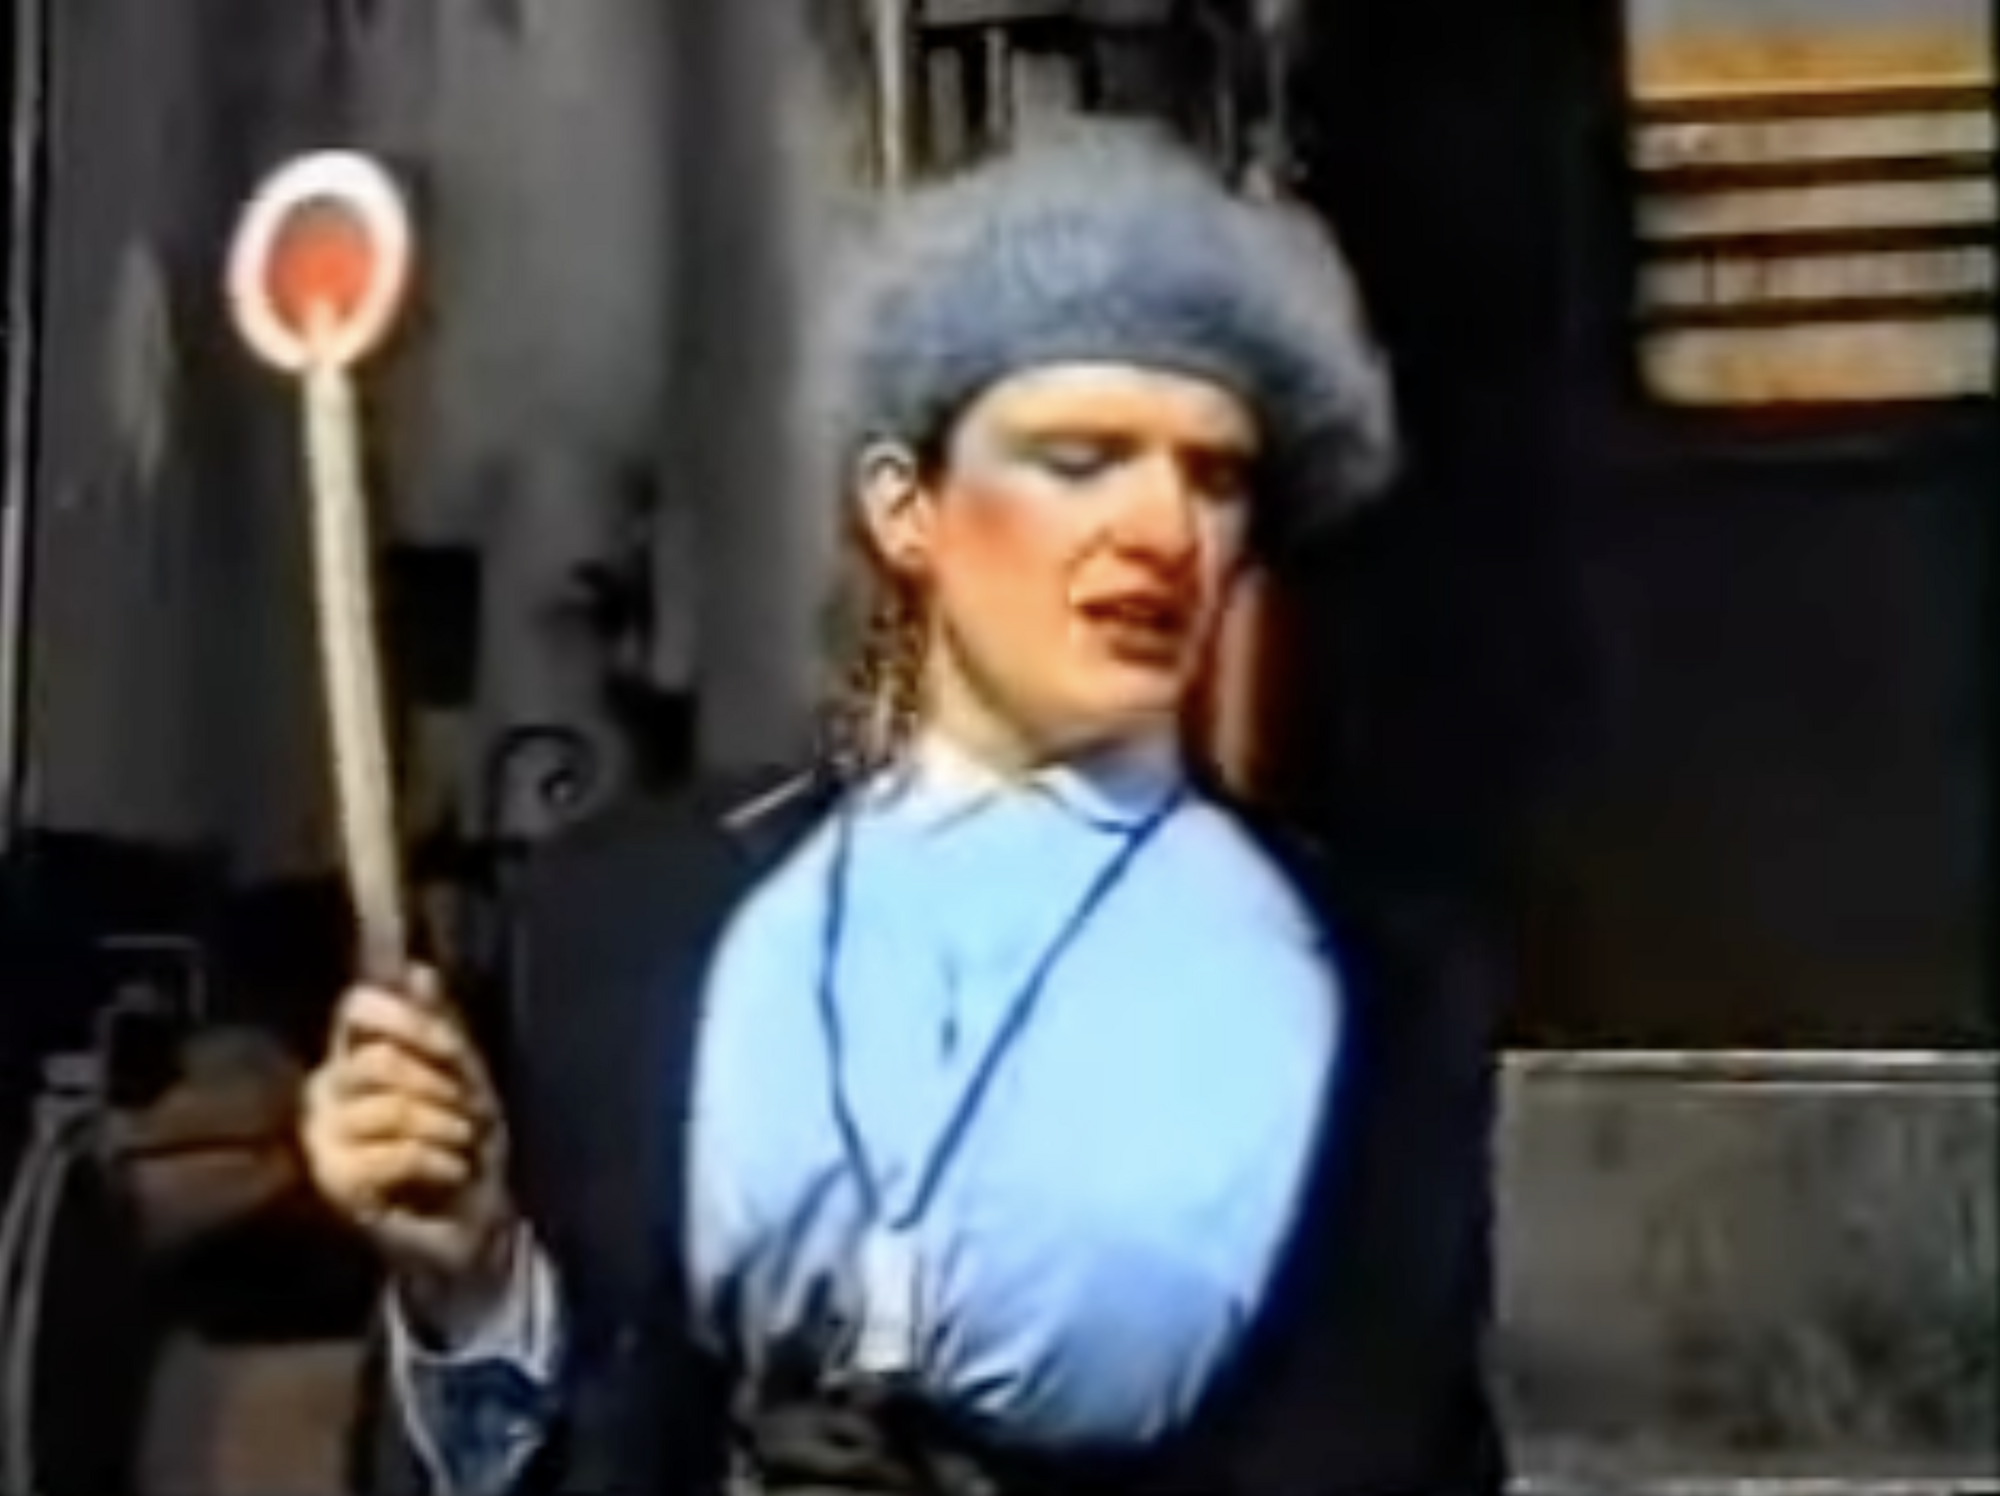 Это был Андрей Данилко, а не Верка Сердючка: появились интересные детали видео 1995 года, где артист говорит по-украински